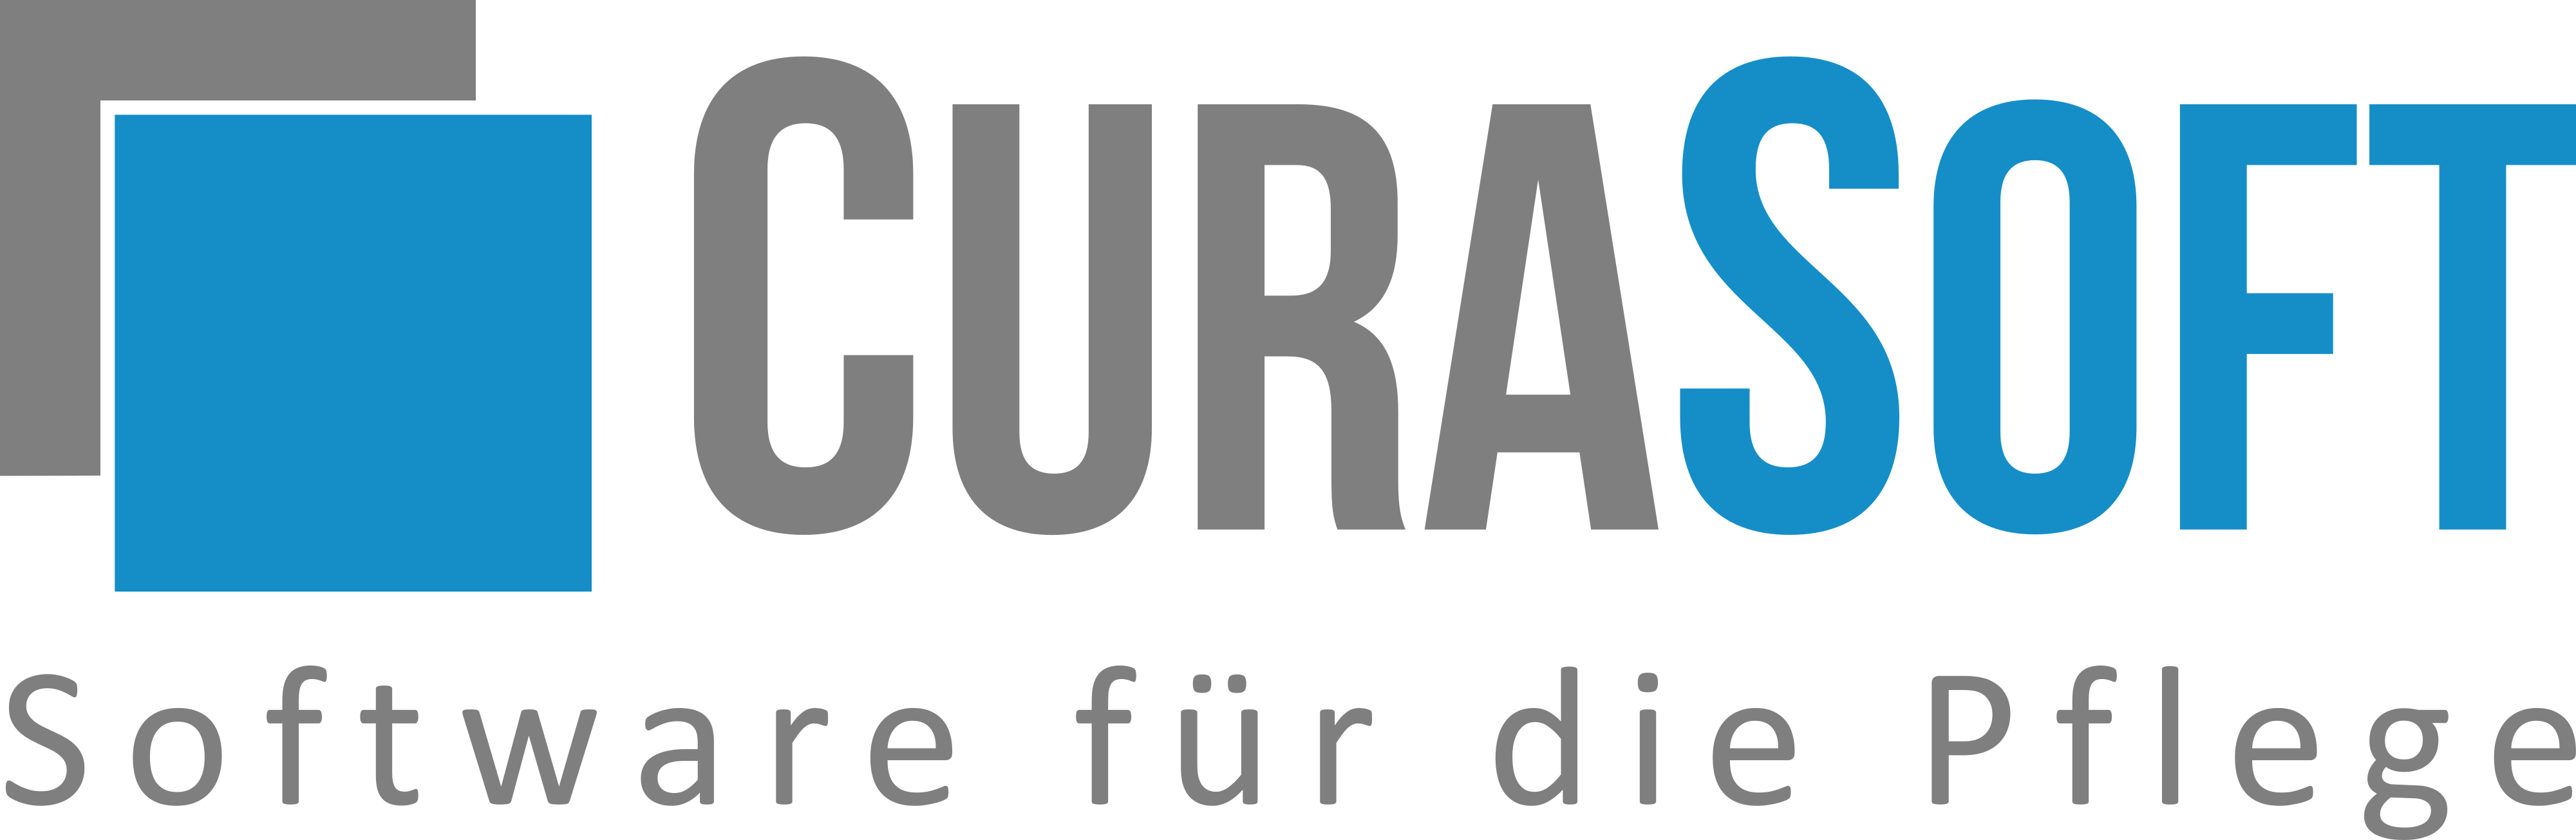 CuraSoft – die Software für die Pflege